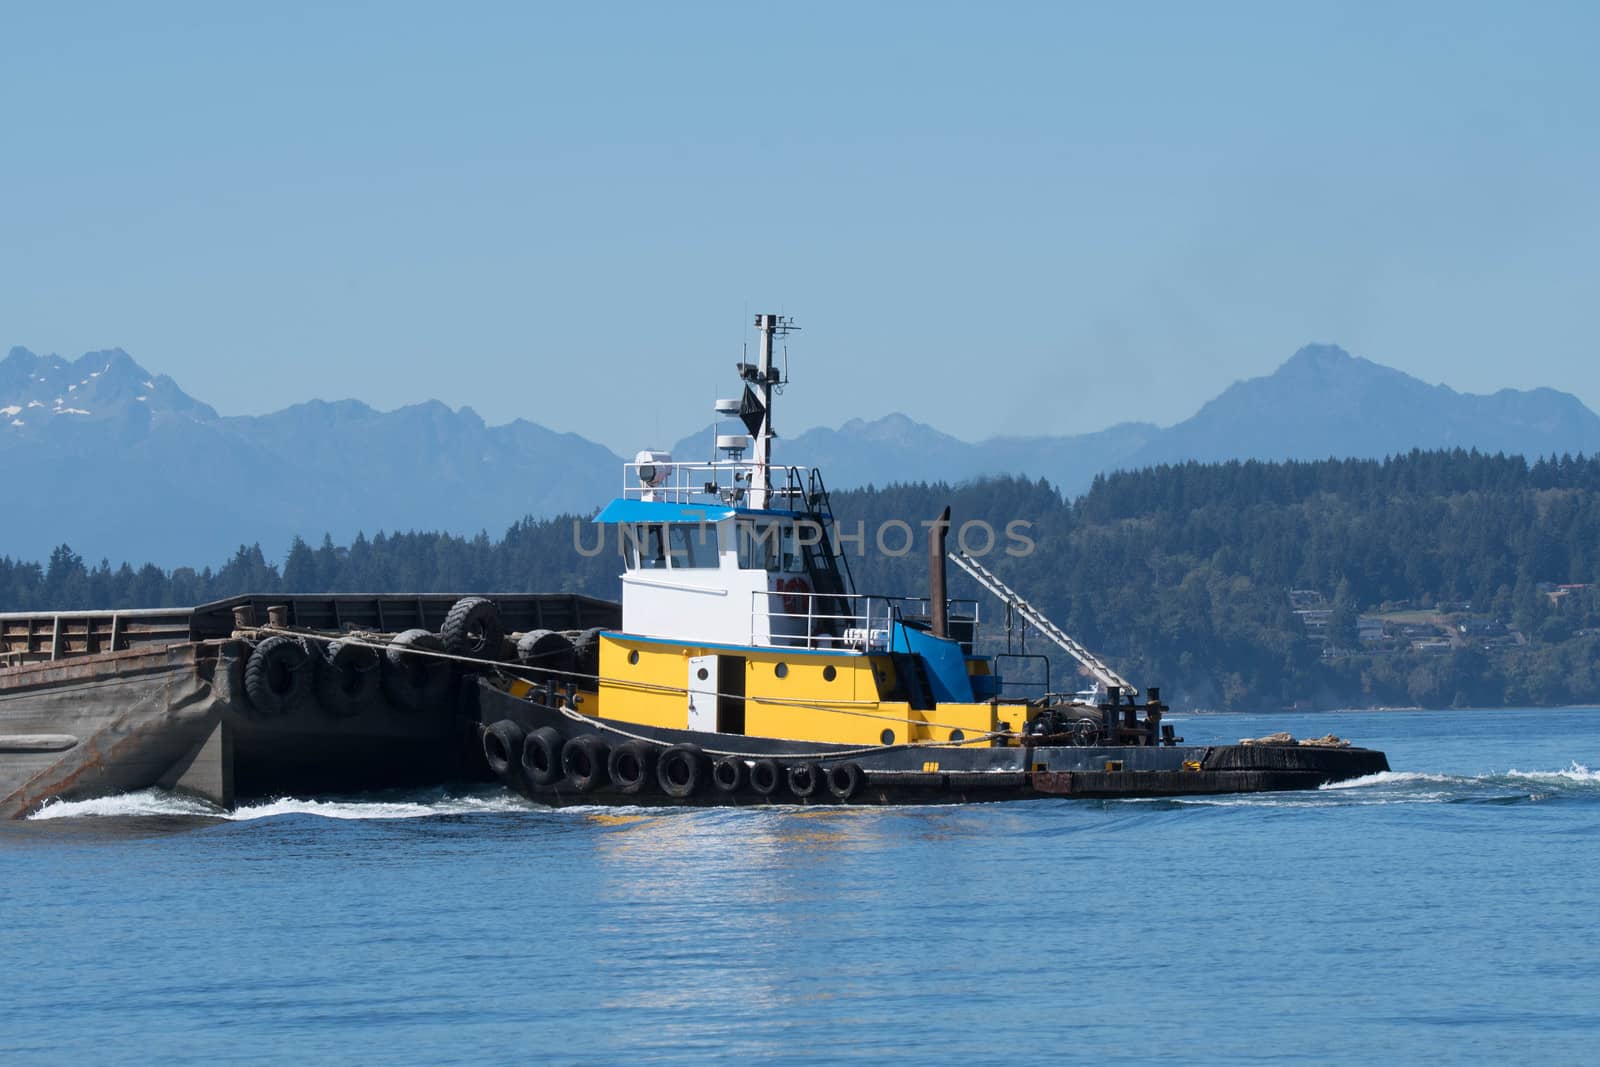 Wasp pushing gravel barge through Shilshole Bay on its way to Tacoma